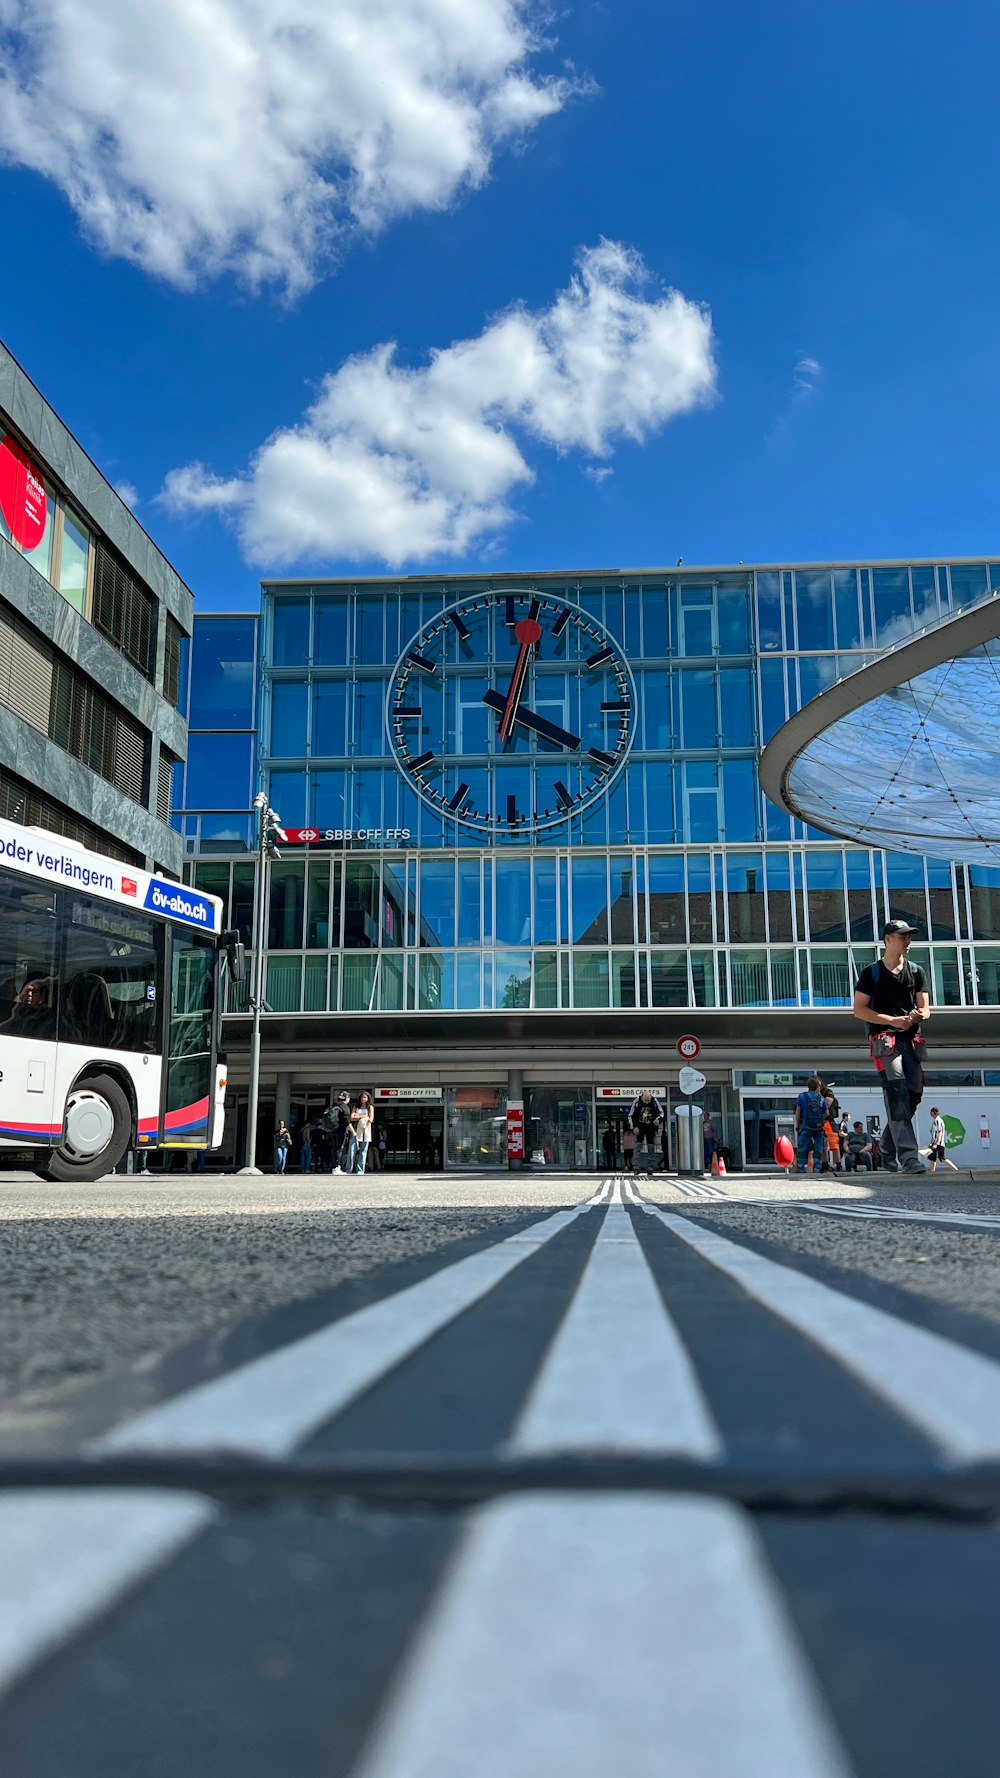 un bus garé devant un bâtiment avec une horloge dessus